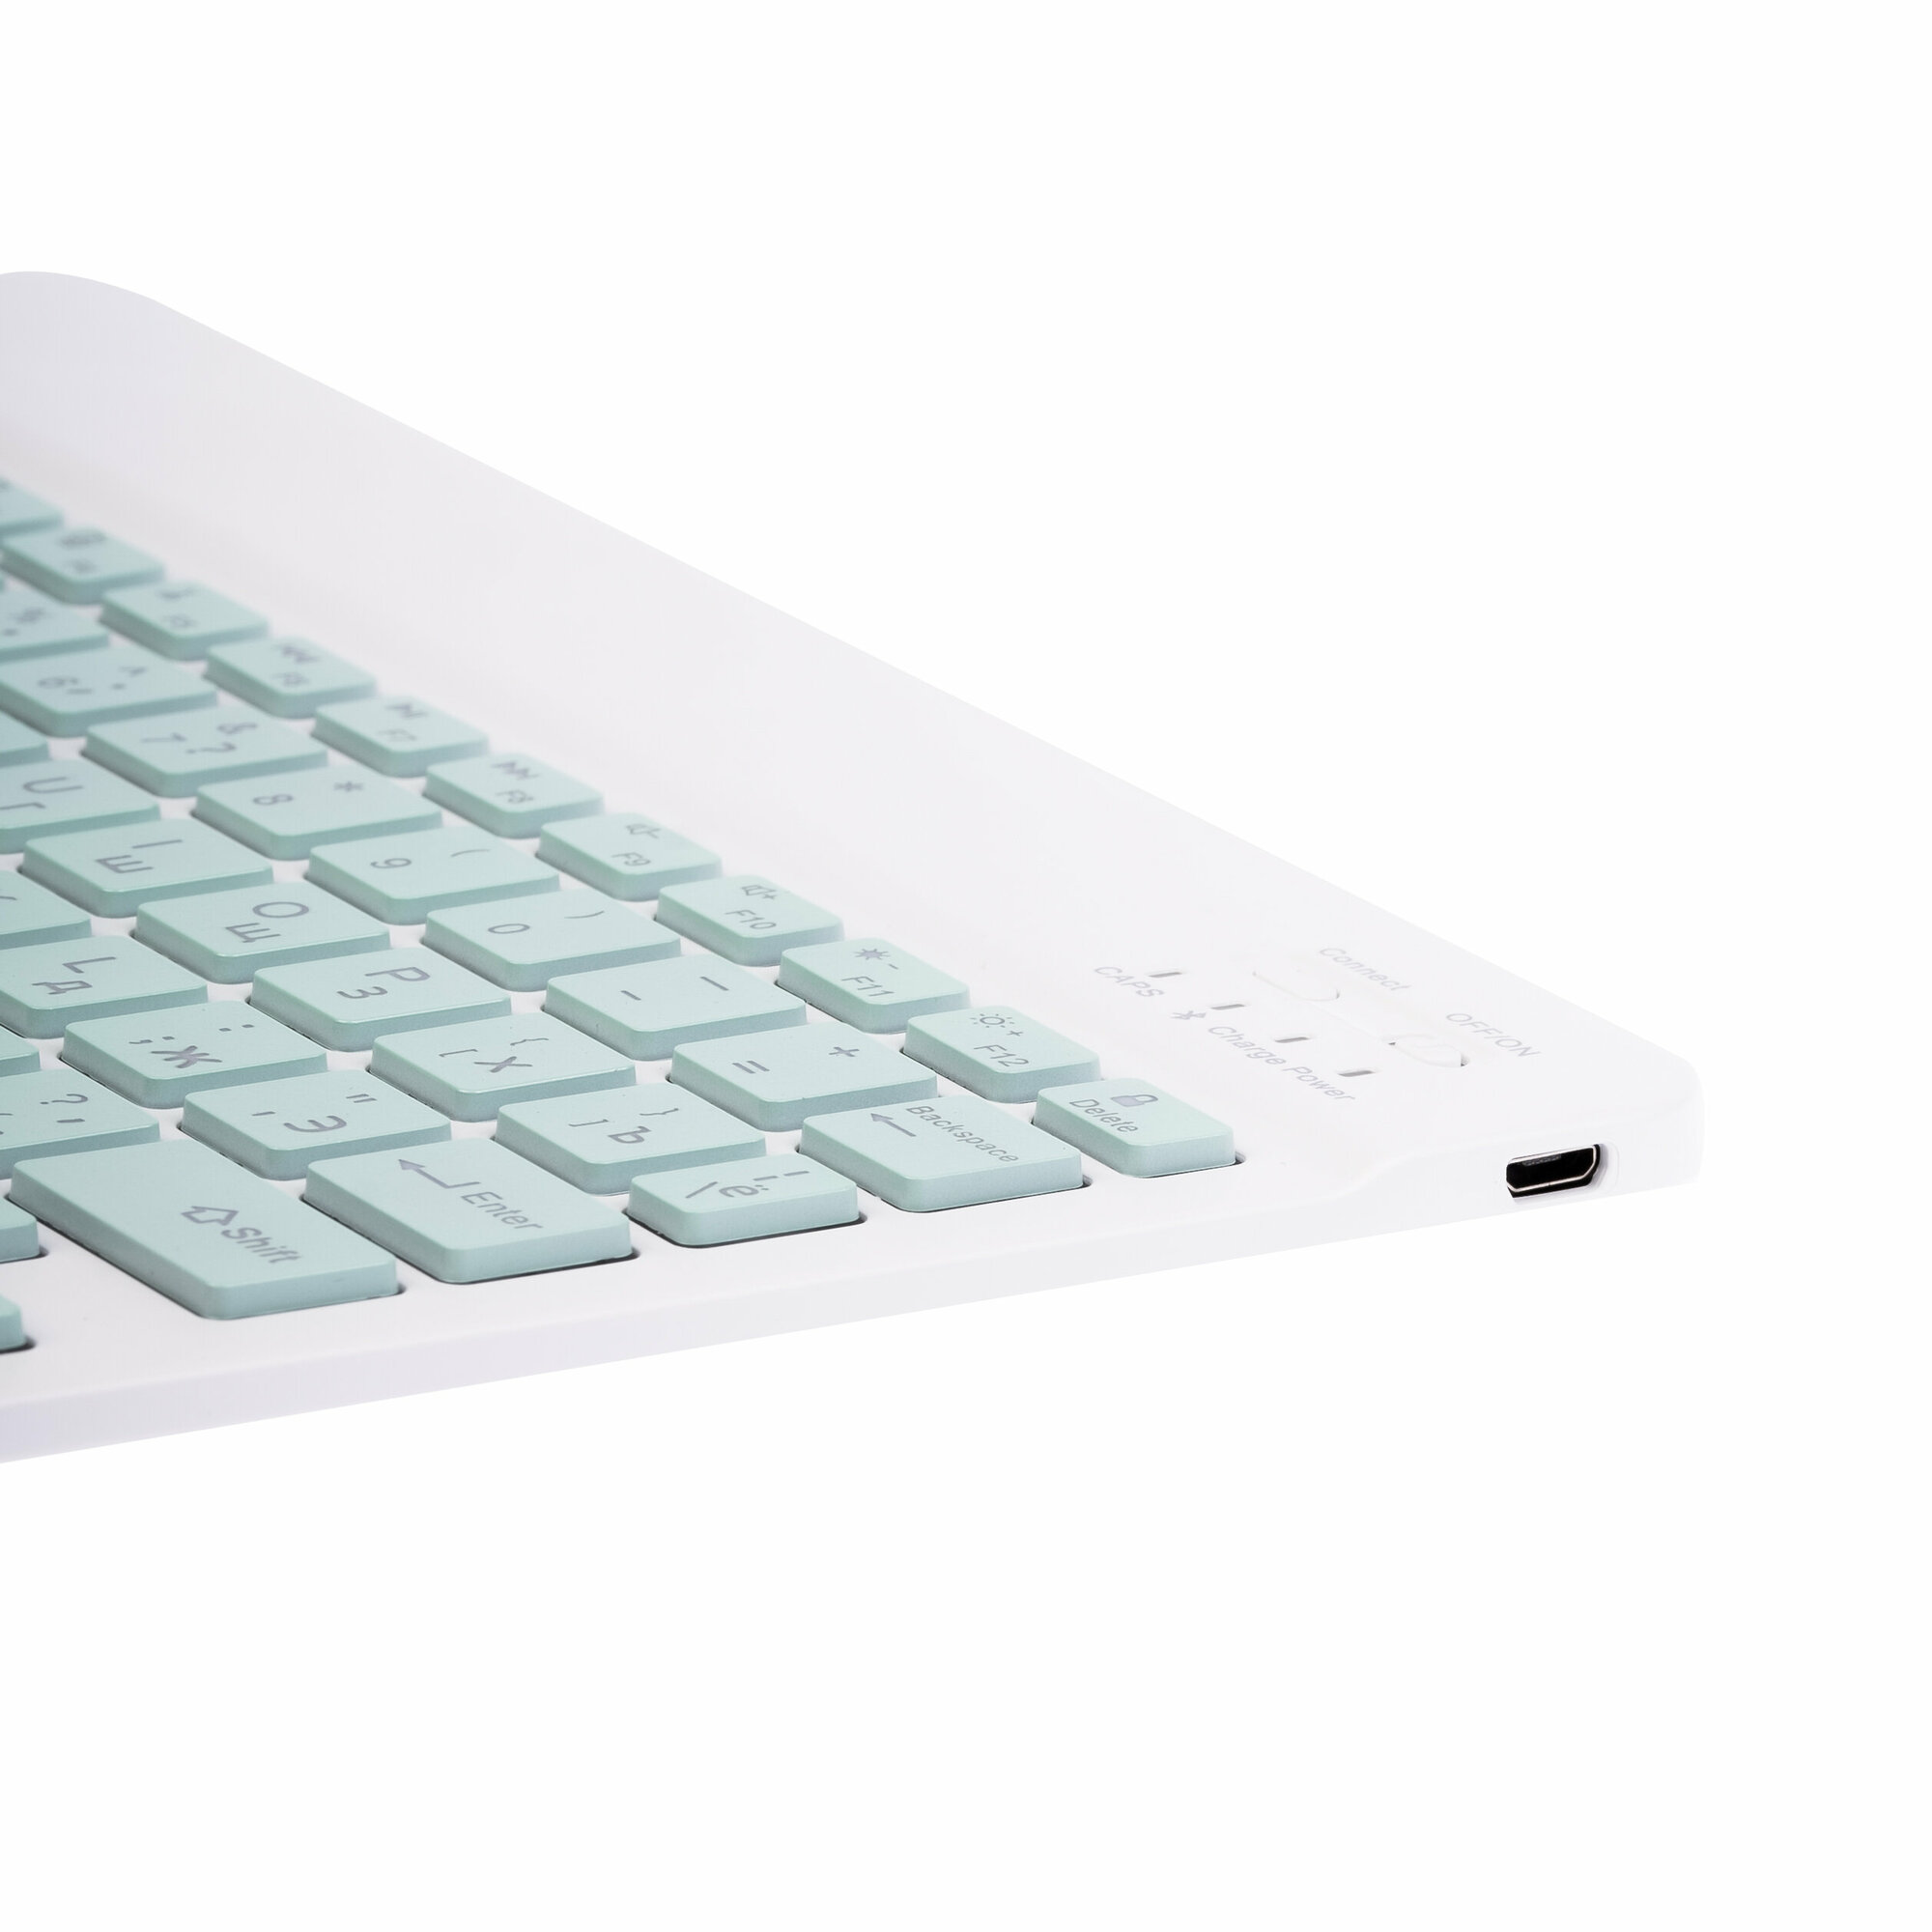 Беспроводная клавиатура и мышь с подсветкой RGB / Комплект Мышь + Клавиатура ультратонкая русская раскладка / Набор для планшета Bluetooth Android